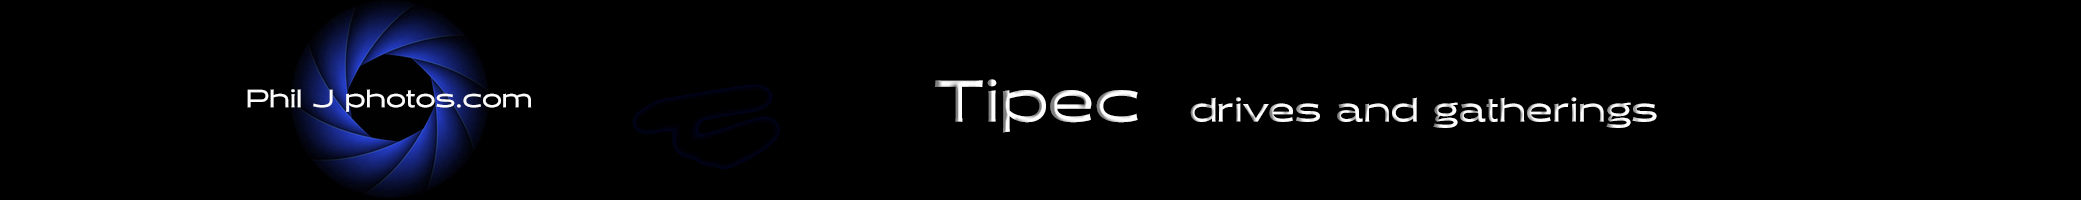 Tipec drives26april copy